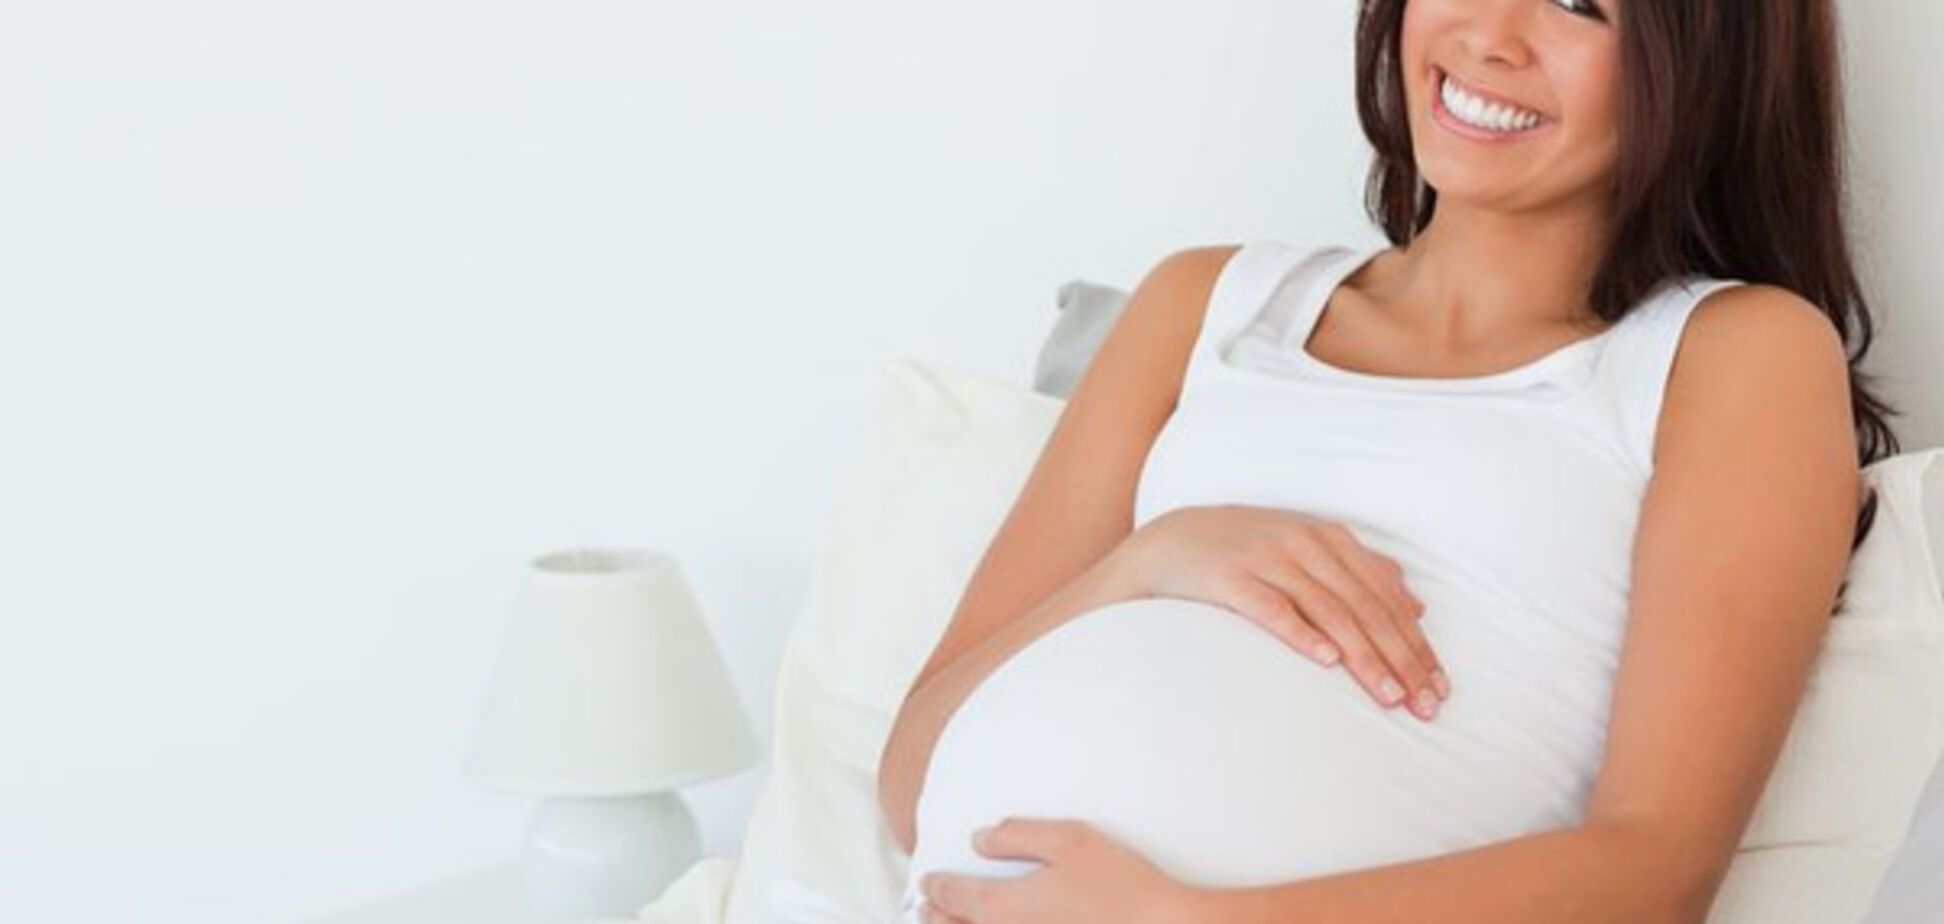 Ученые объяснили, чем опасен сон на спине во время беременности